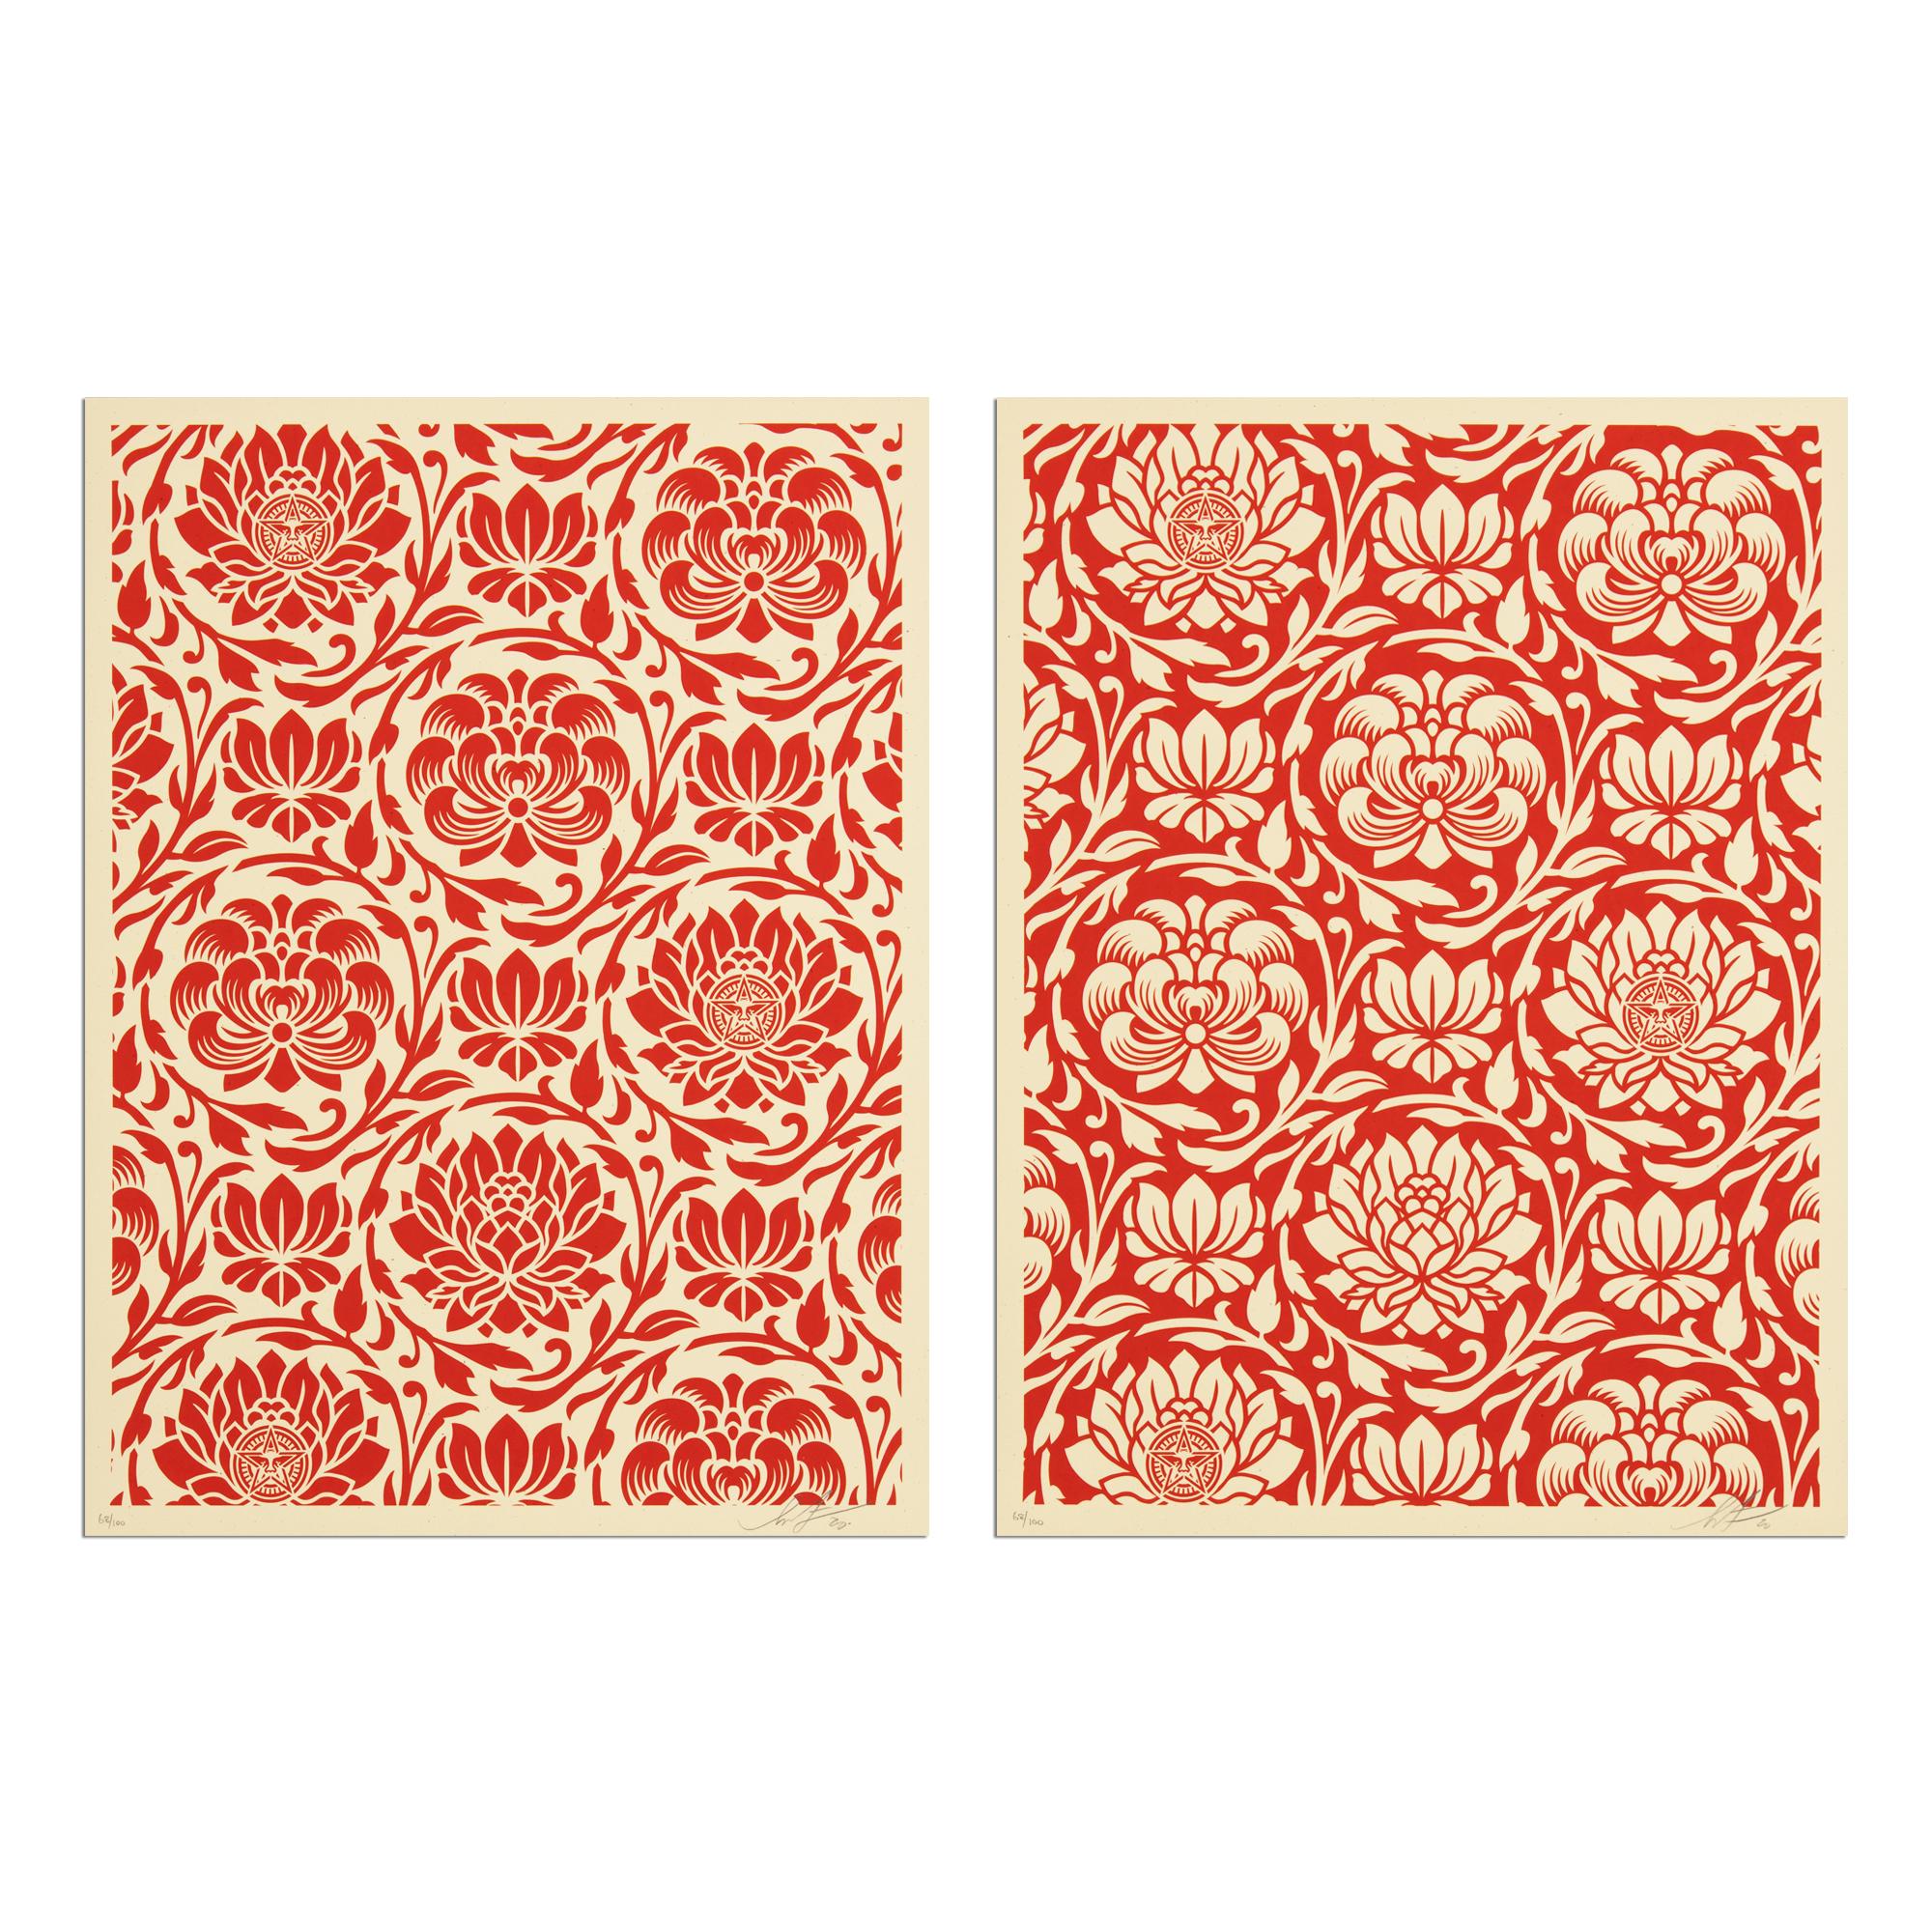 Shepard Fairey (américain, né en 1970)
Harmonie florale (Yin/Yang rouge), 2020
Support : 2 sérigraphies sur papier
Dimensions : chacun 24 x 18 in (61 x 46 cm)
Édition de 100 exemplaires : chaque exemplaire est signé et numéroté au crayon.
Condit :